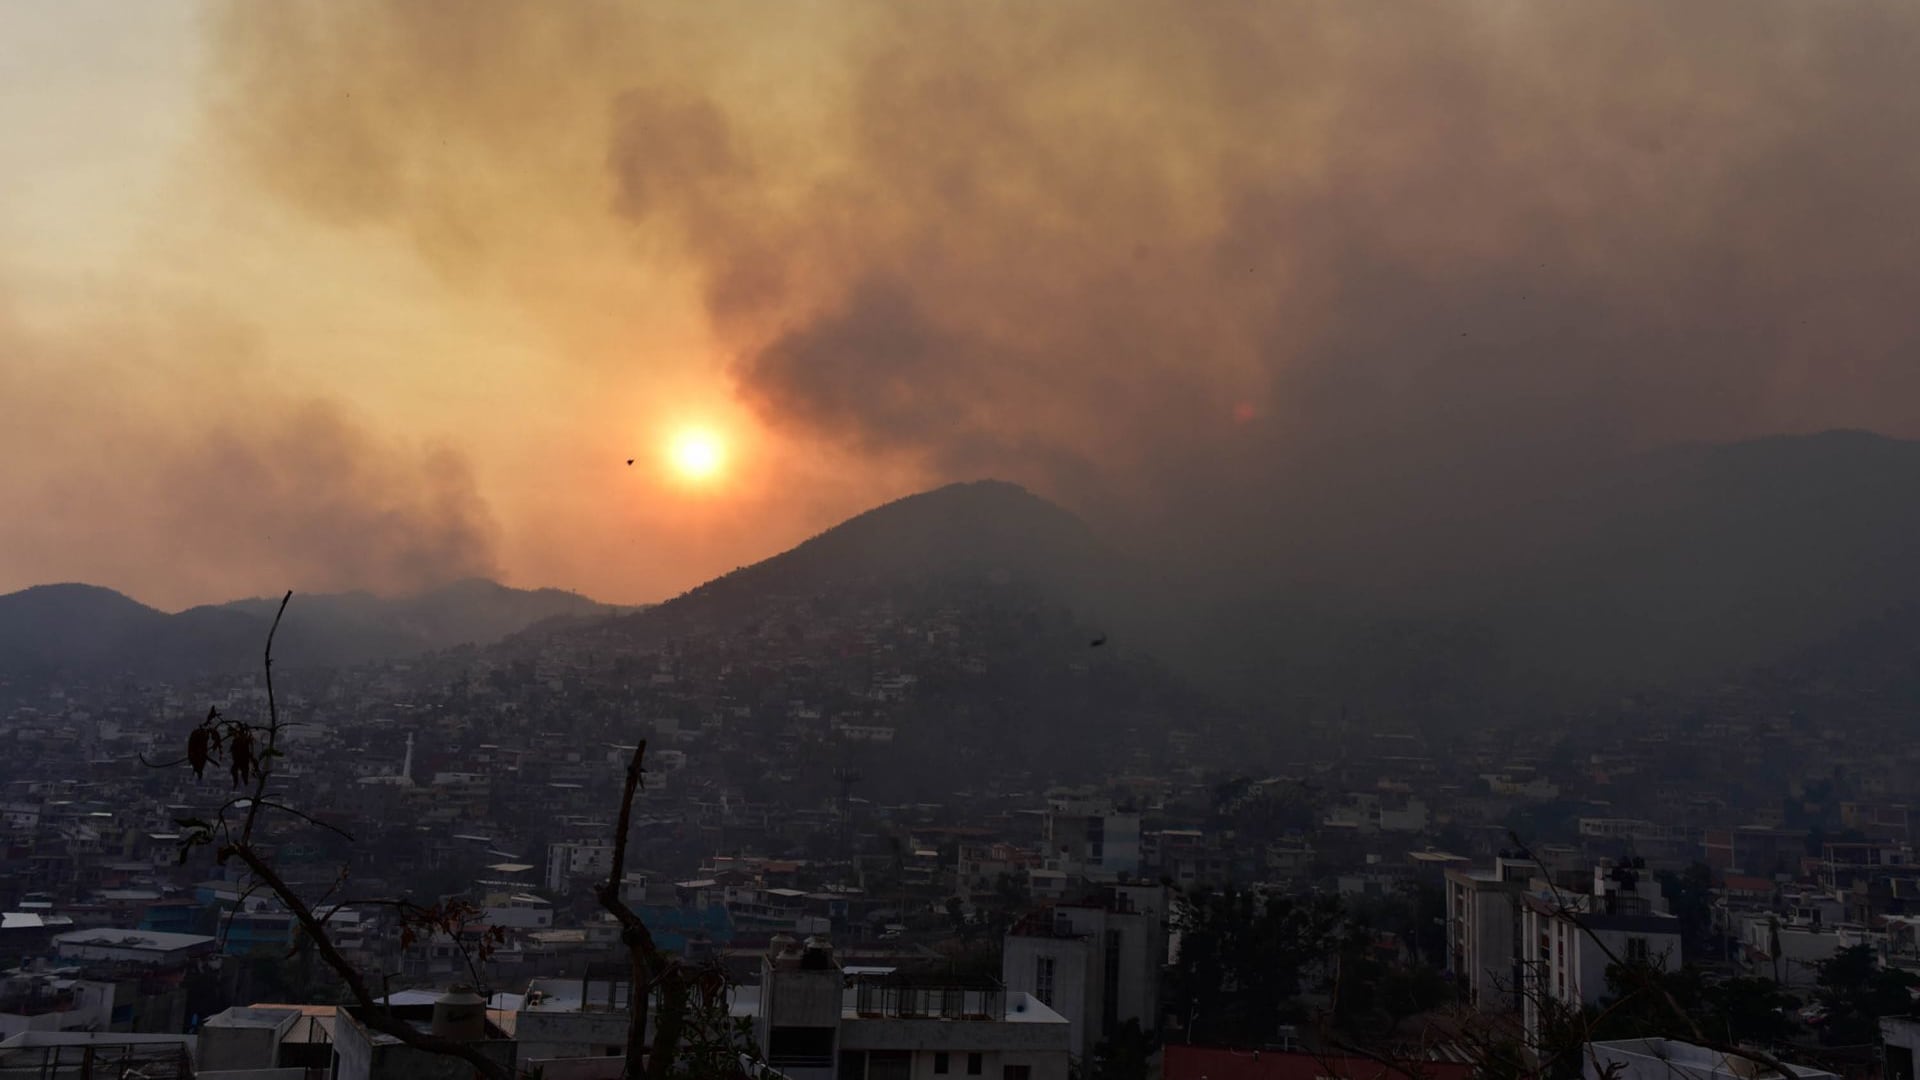 Fuera de control se encuentran varios incendios forestales que afectan el Parque Nacional El Veladero, ubicado en los cerros que rodean la bahía de Acapulco, los incendios que afectan desde un par de días se han incremento a pesar de los esfuerzos de brigadas de protección civil y bomberos,  a si como combatientes de incendios de Conafor.